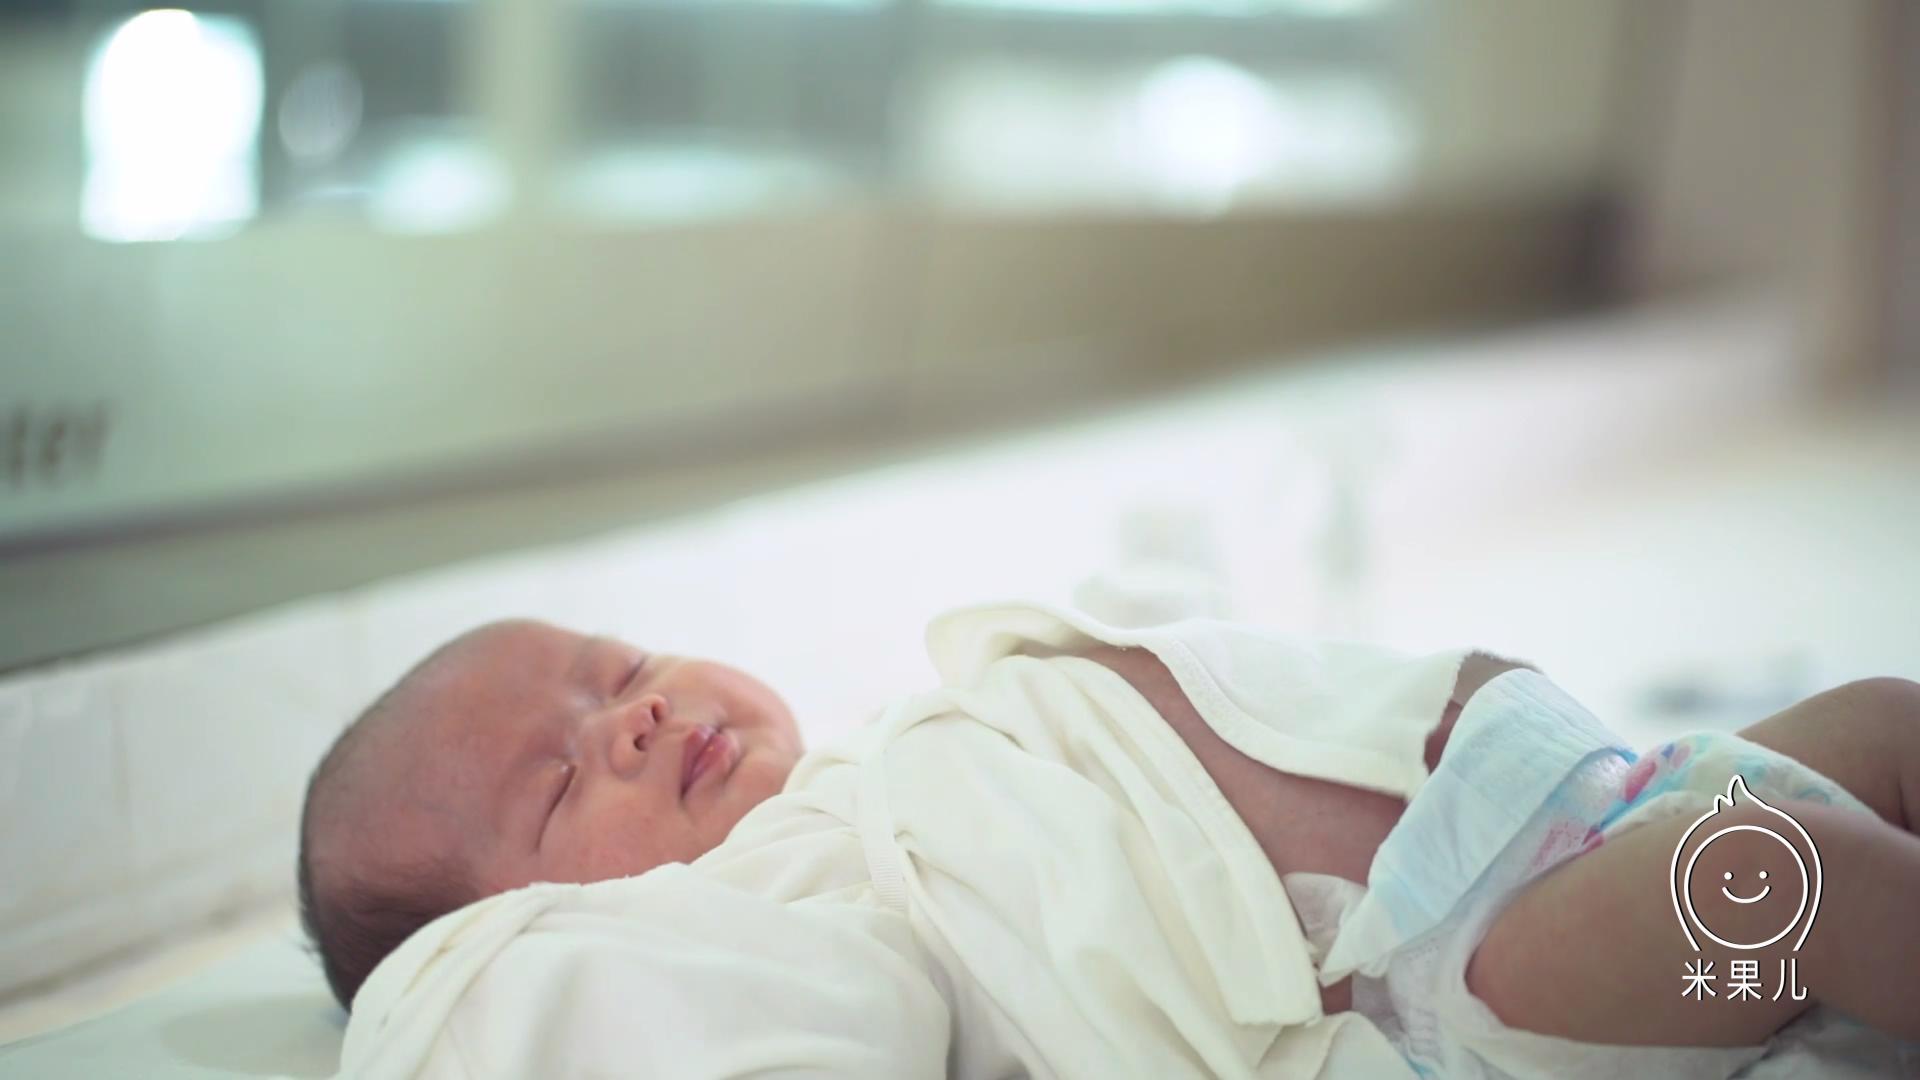 【健康科普】疫情期间如何做好宝宝脐部护理 - 健康科普 - 六盘水妇幼保健院